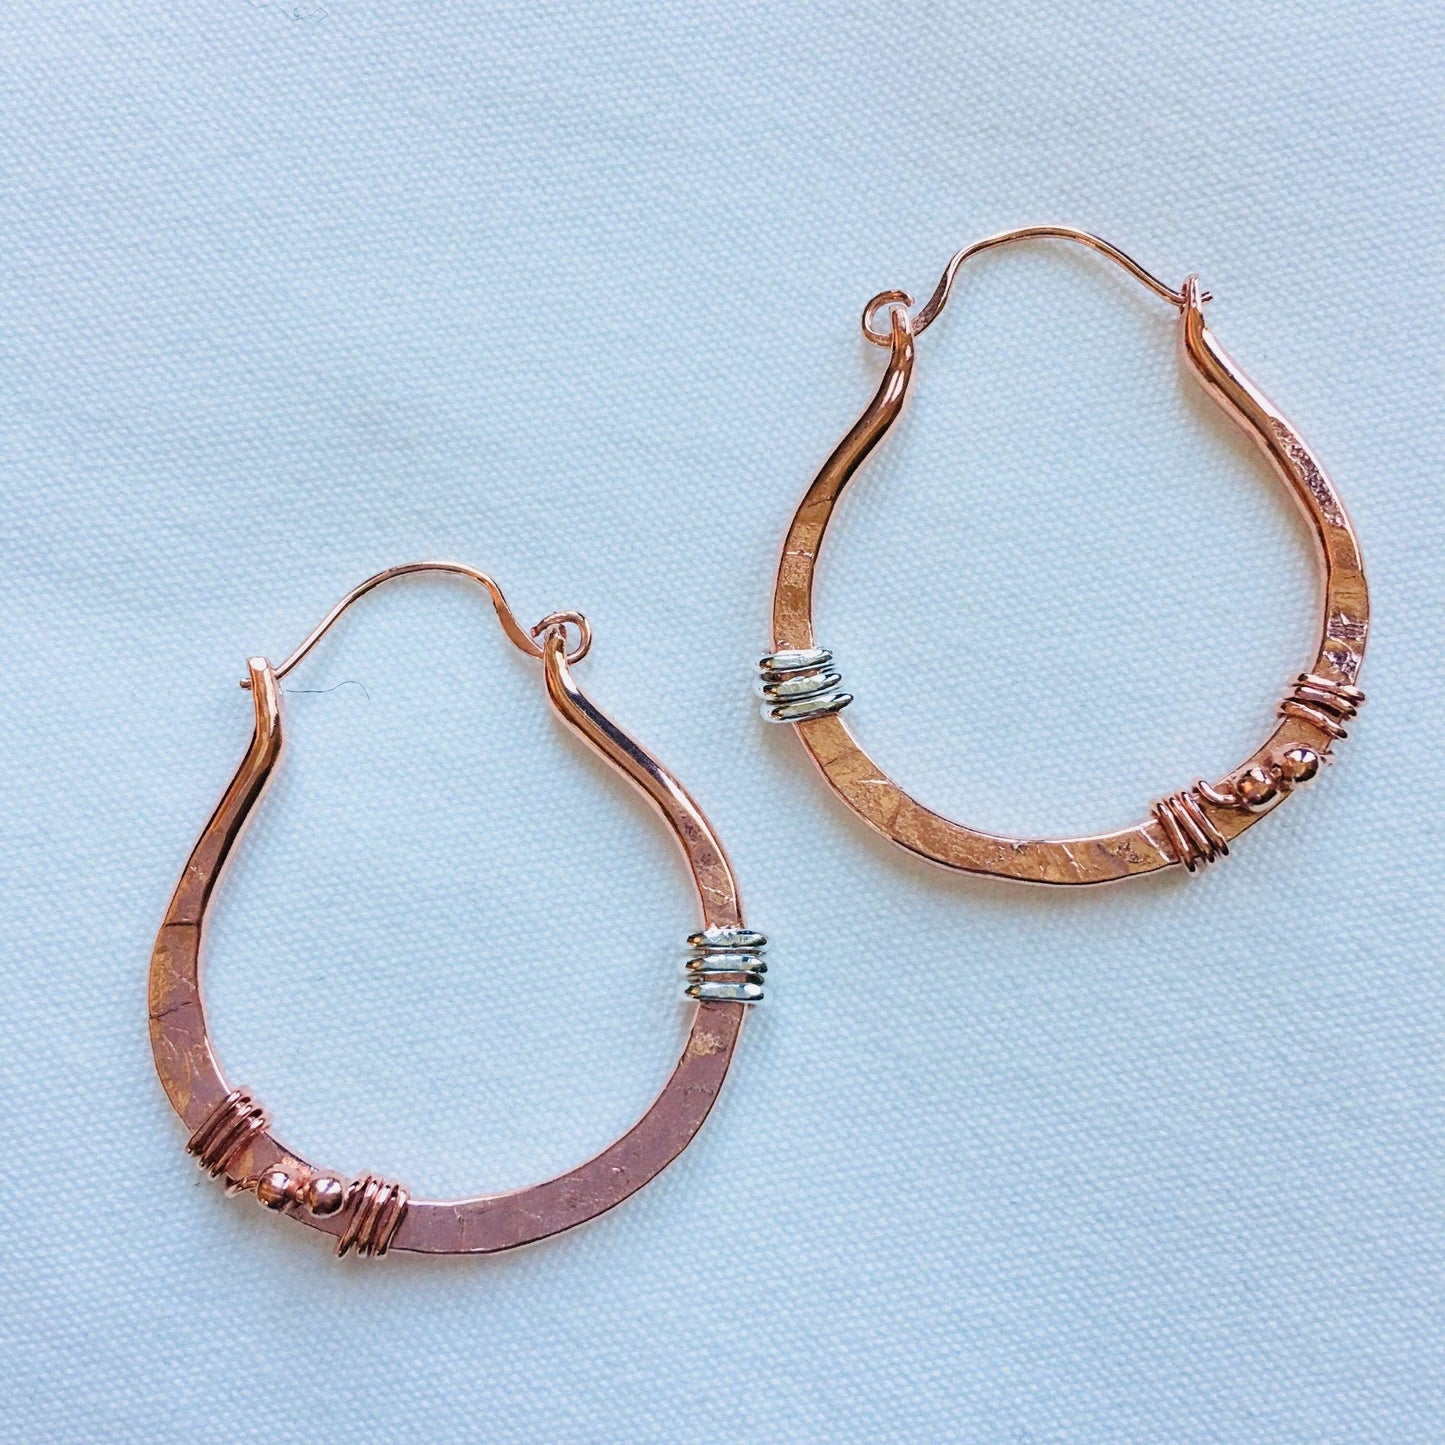 Copper Hoop Earrings, Rustic Earrings, Hammered Copper, Boho Earrings, Bohemian Earrings, Copper Jewelry